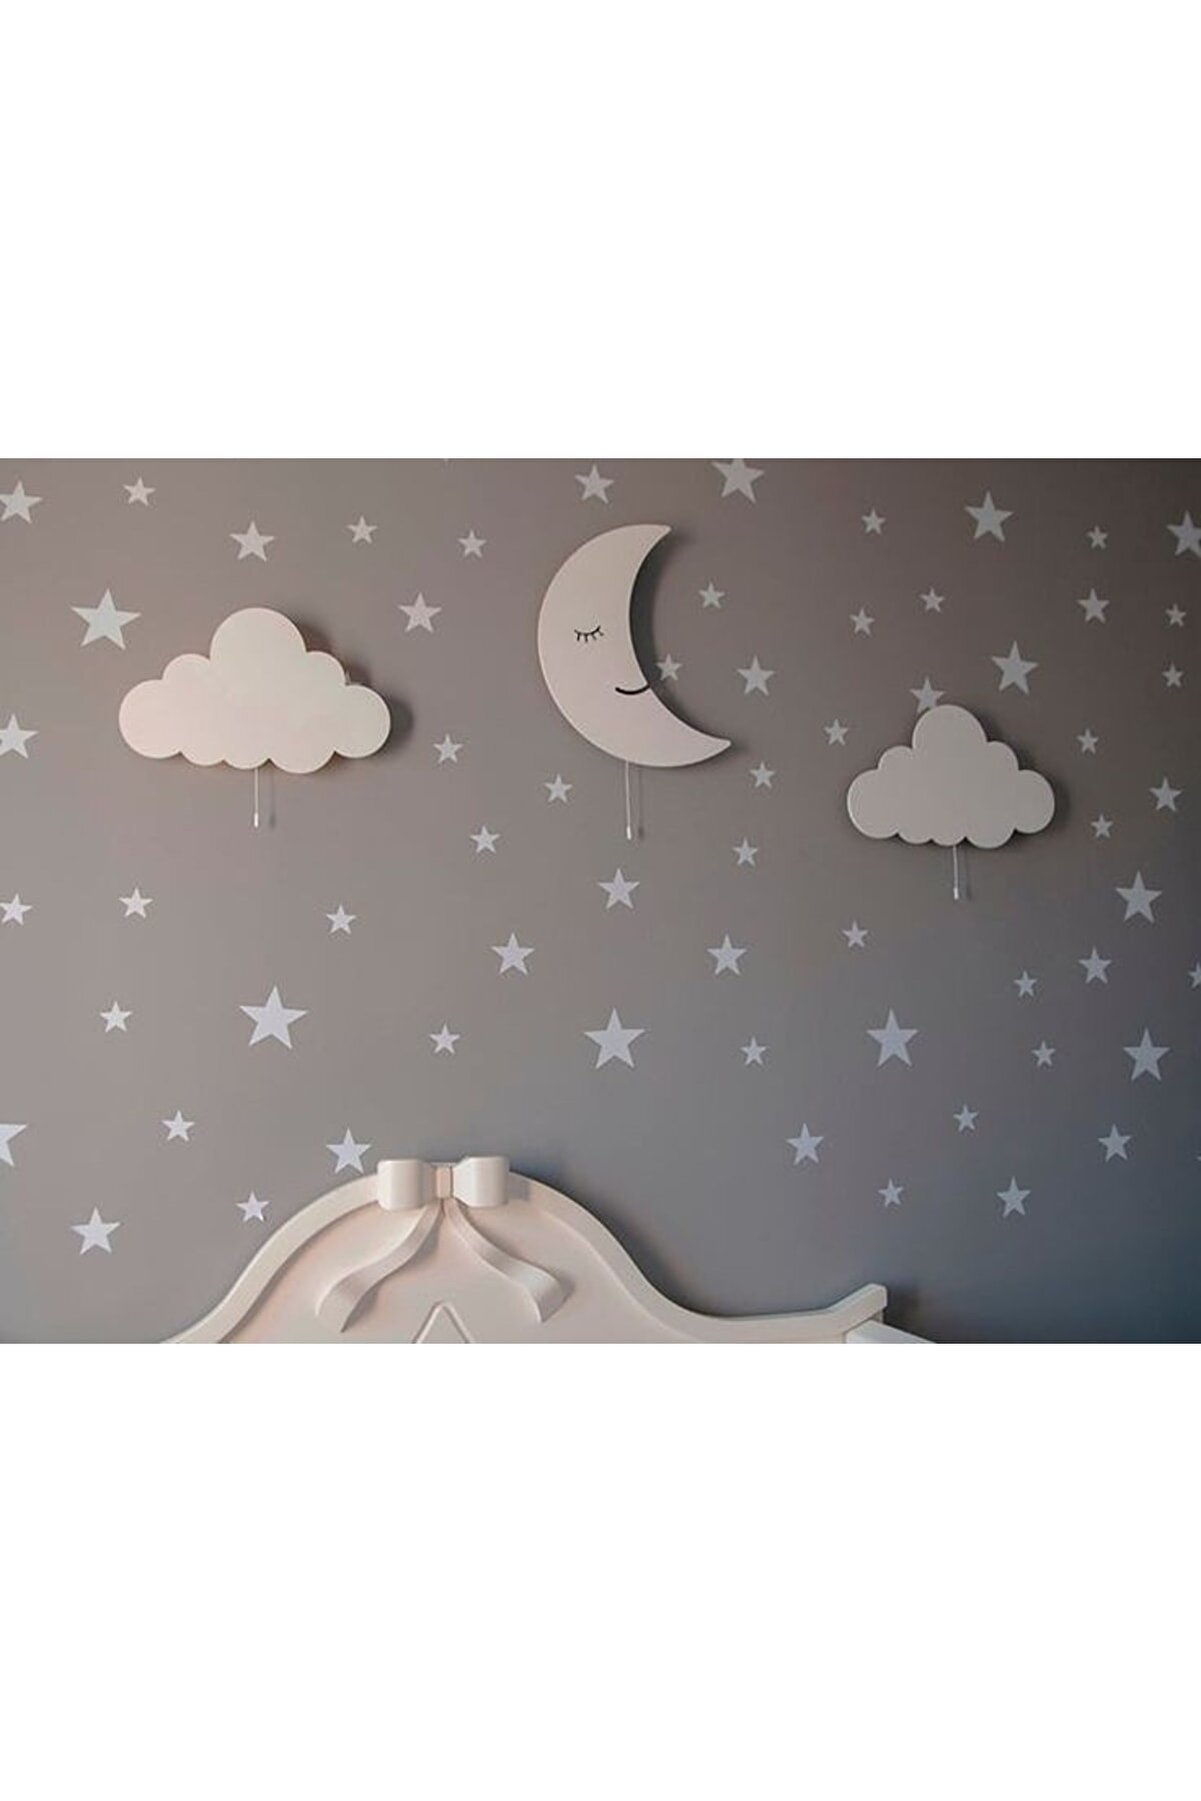 EMTA 3 Lü Bulut Aydede Aydınlatma Gece Lambası Çocuk Odası Aksesuar Dekorasyon